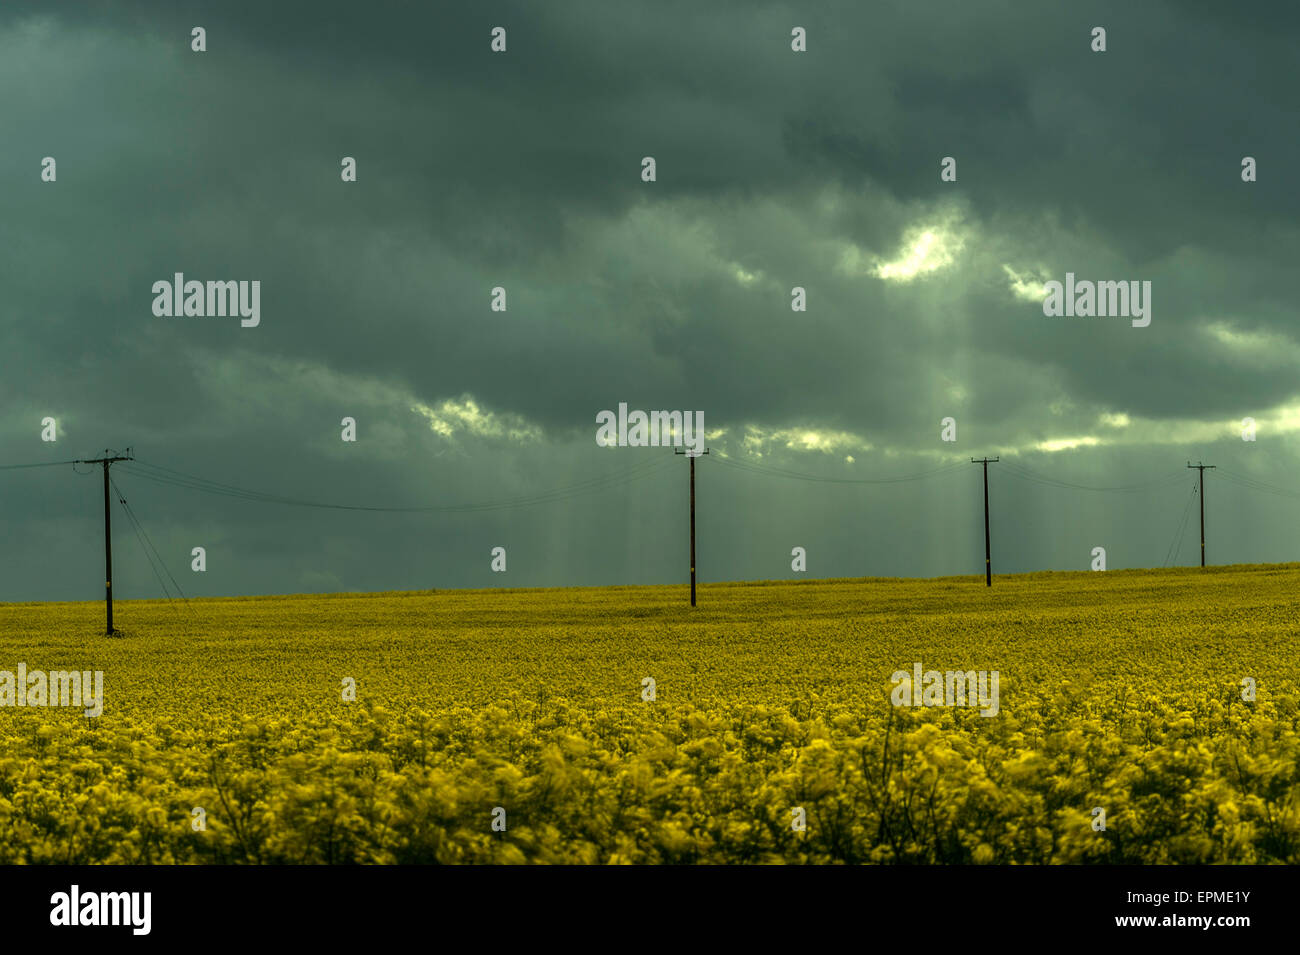 Paysage du comté anglais- Dark storm clouds Ft. Champ de colza d'or Banque D'Images